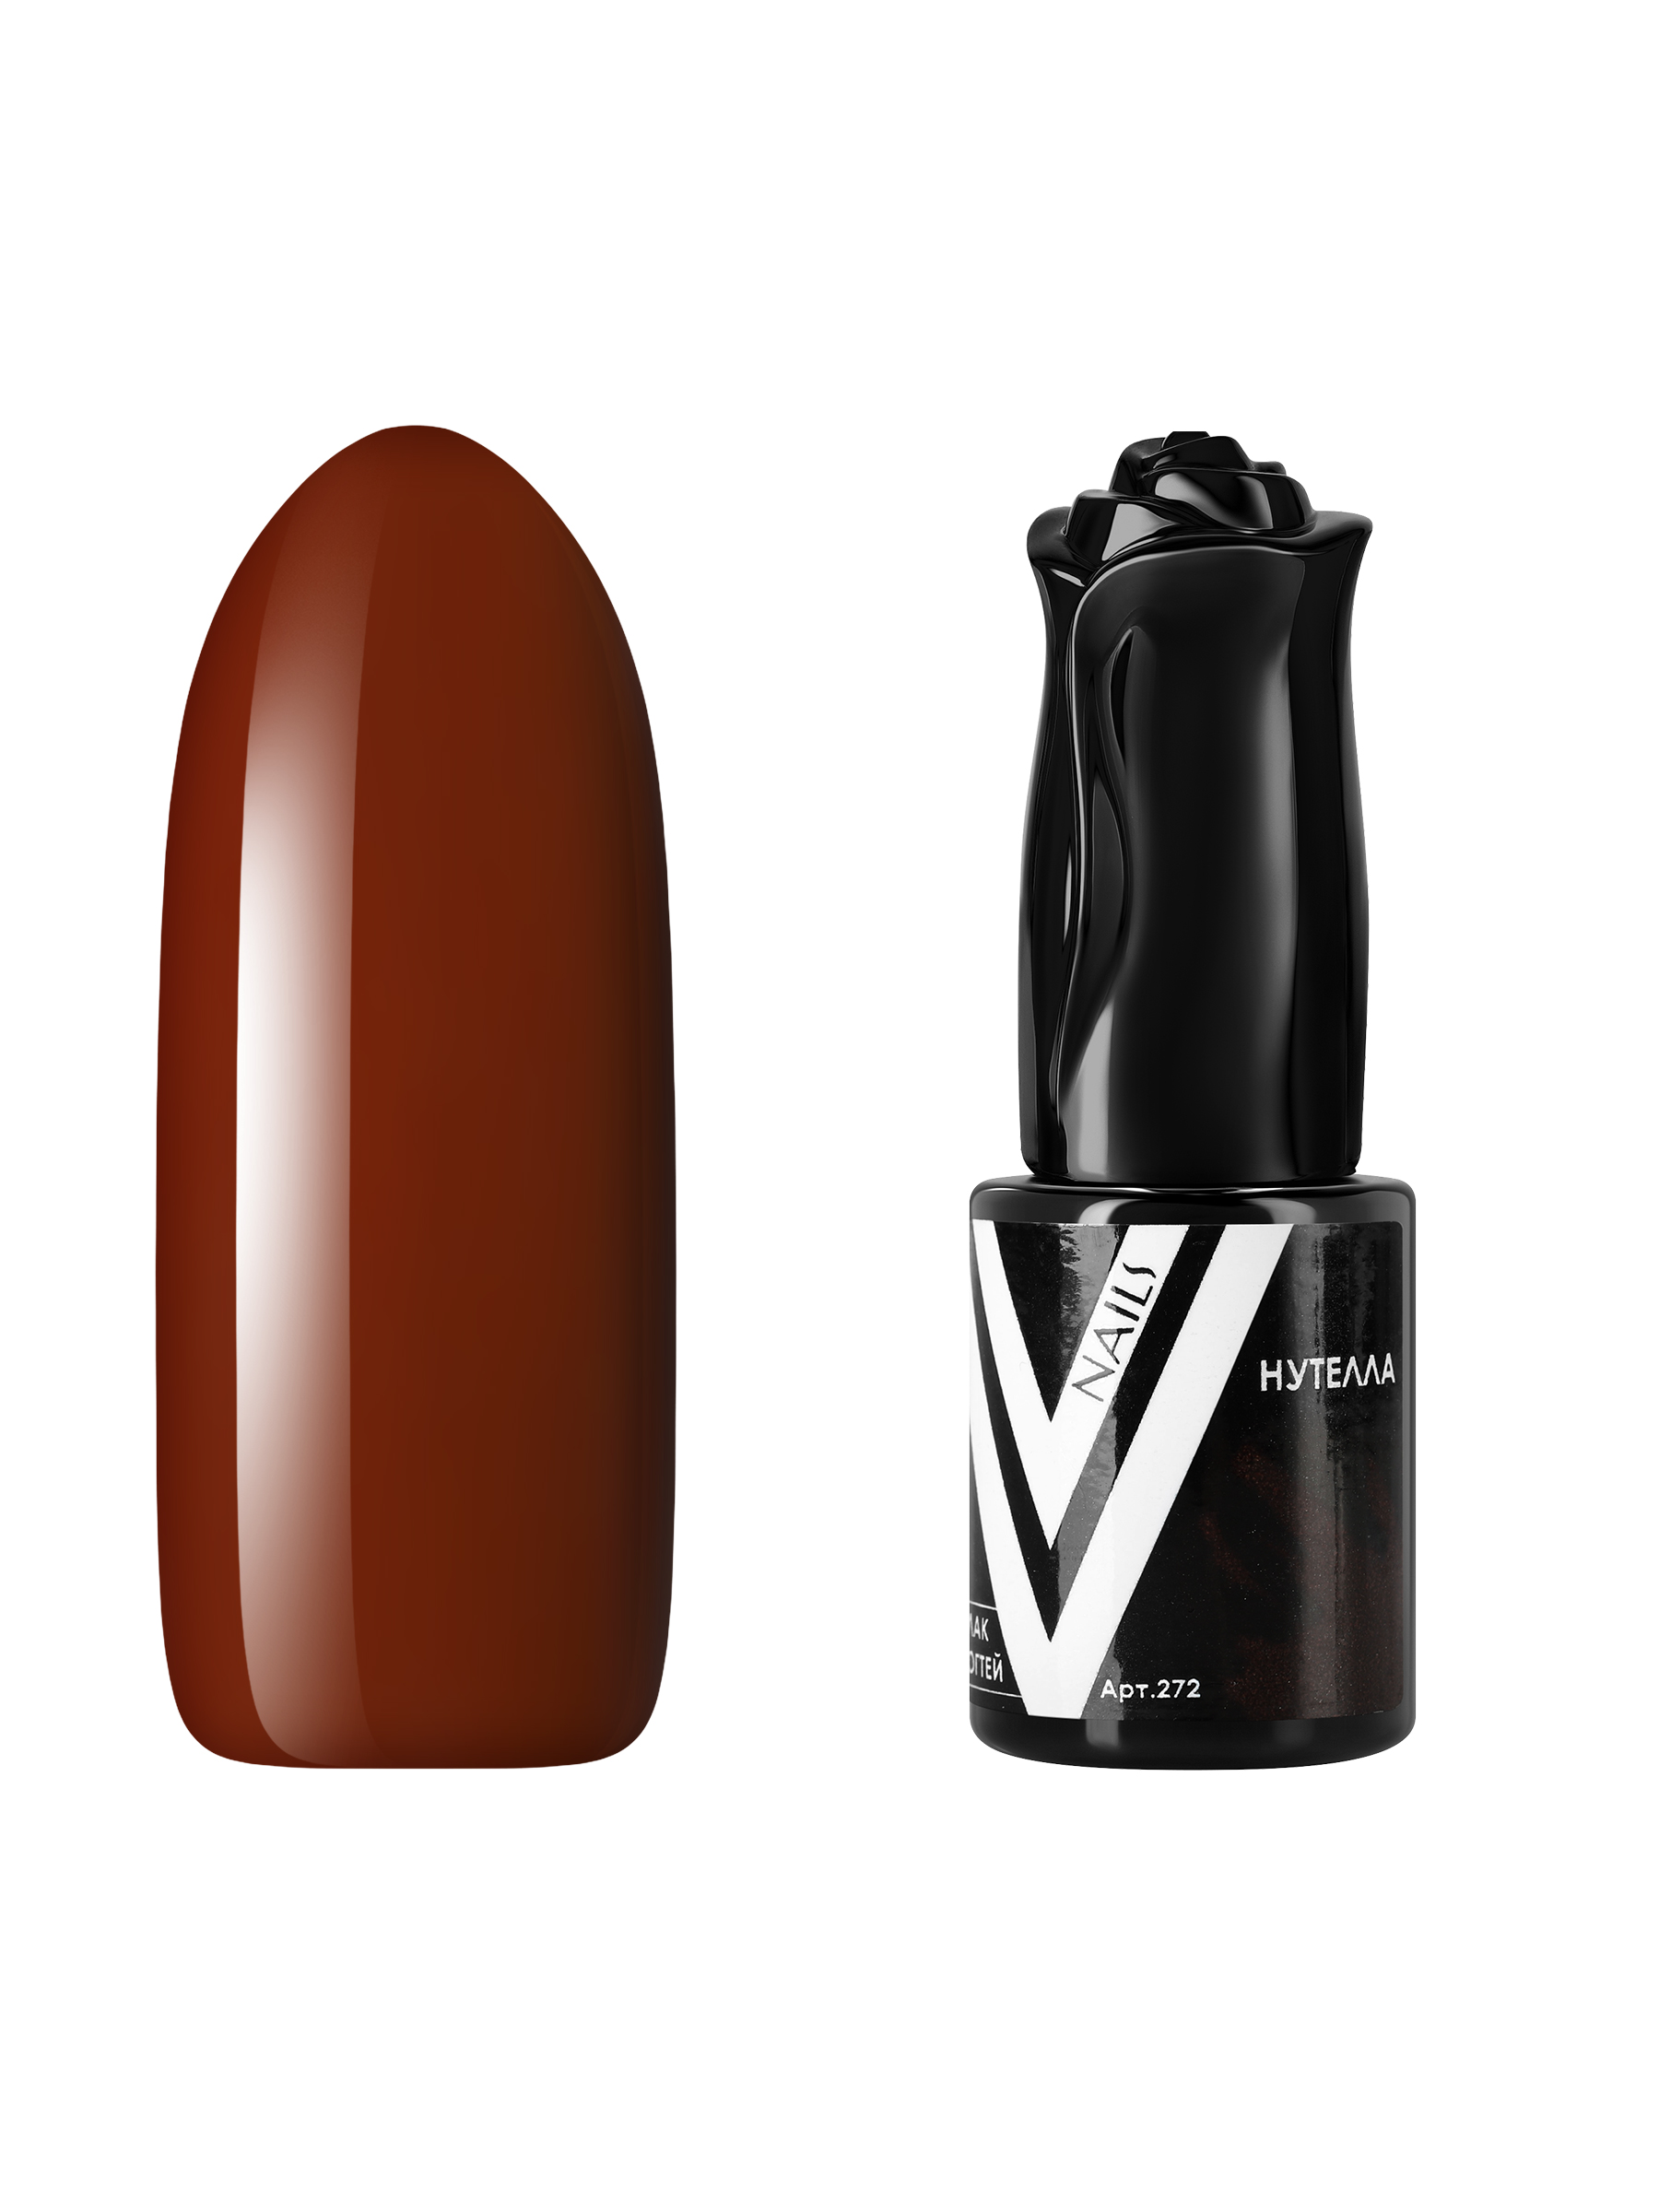 Гель-лак для ногтей Vogue Nails плотный самовыравнивающийся, коричневый, 10 мл